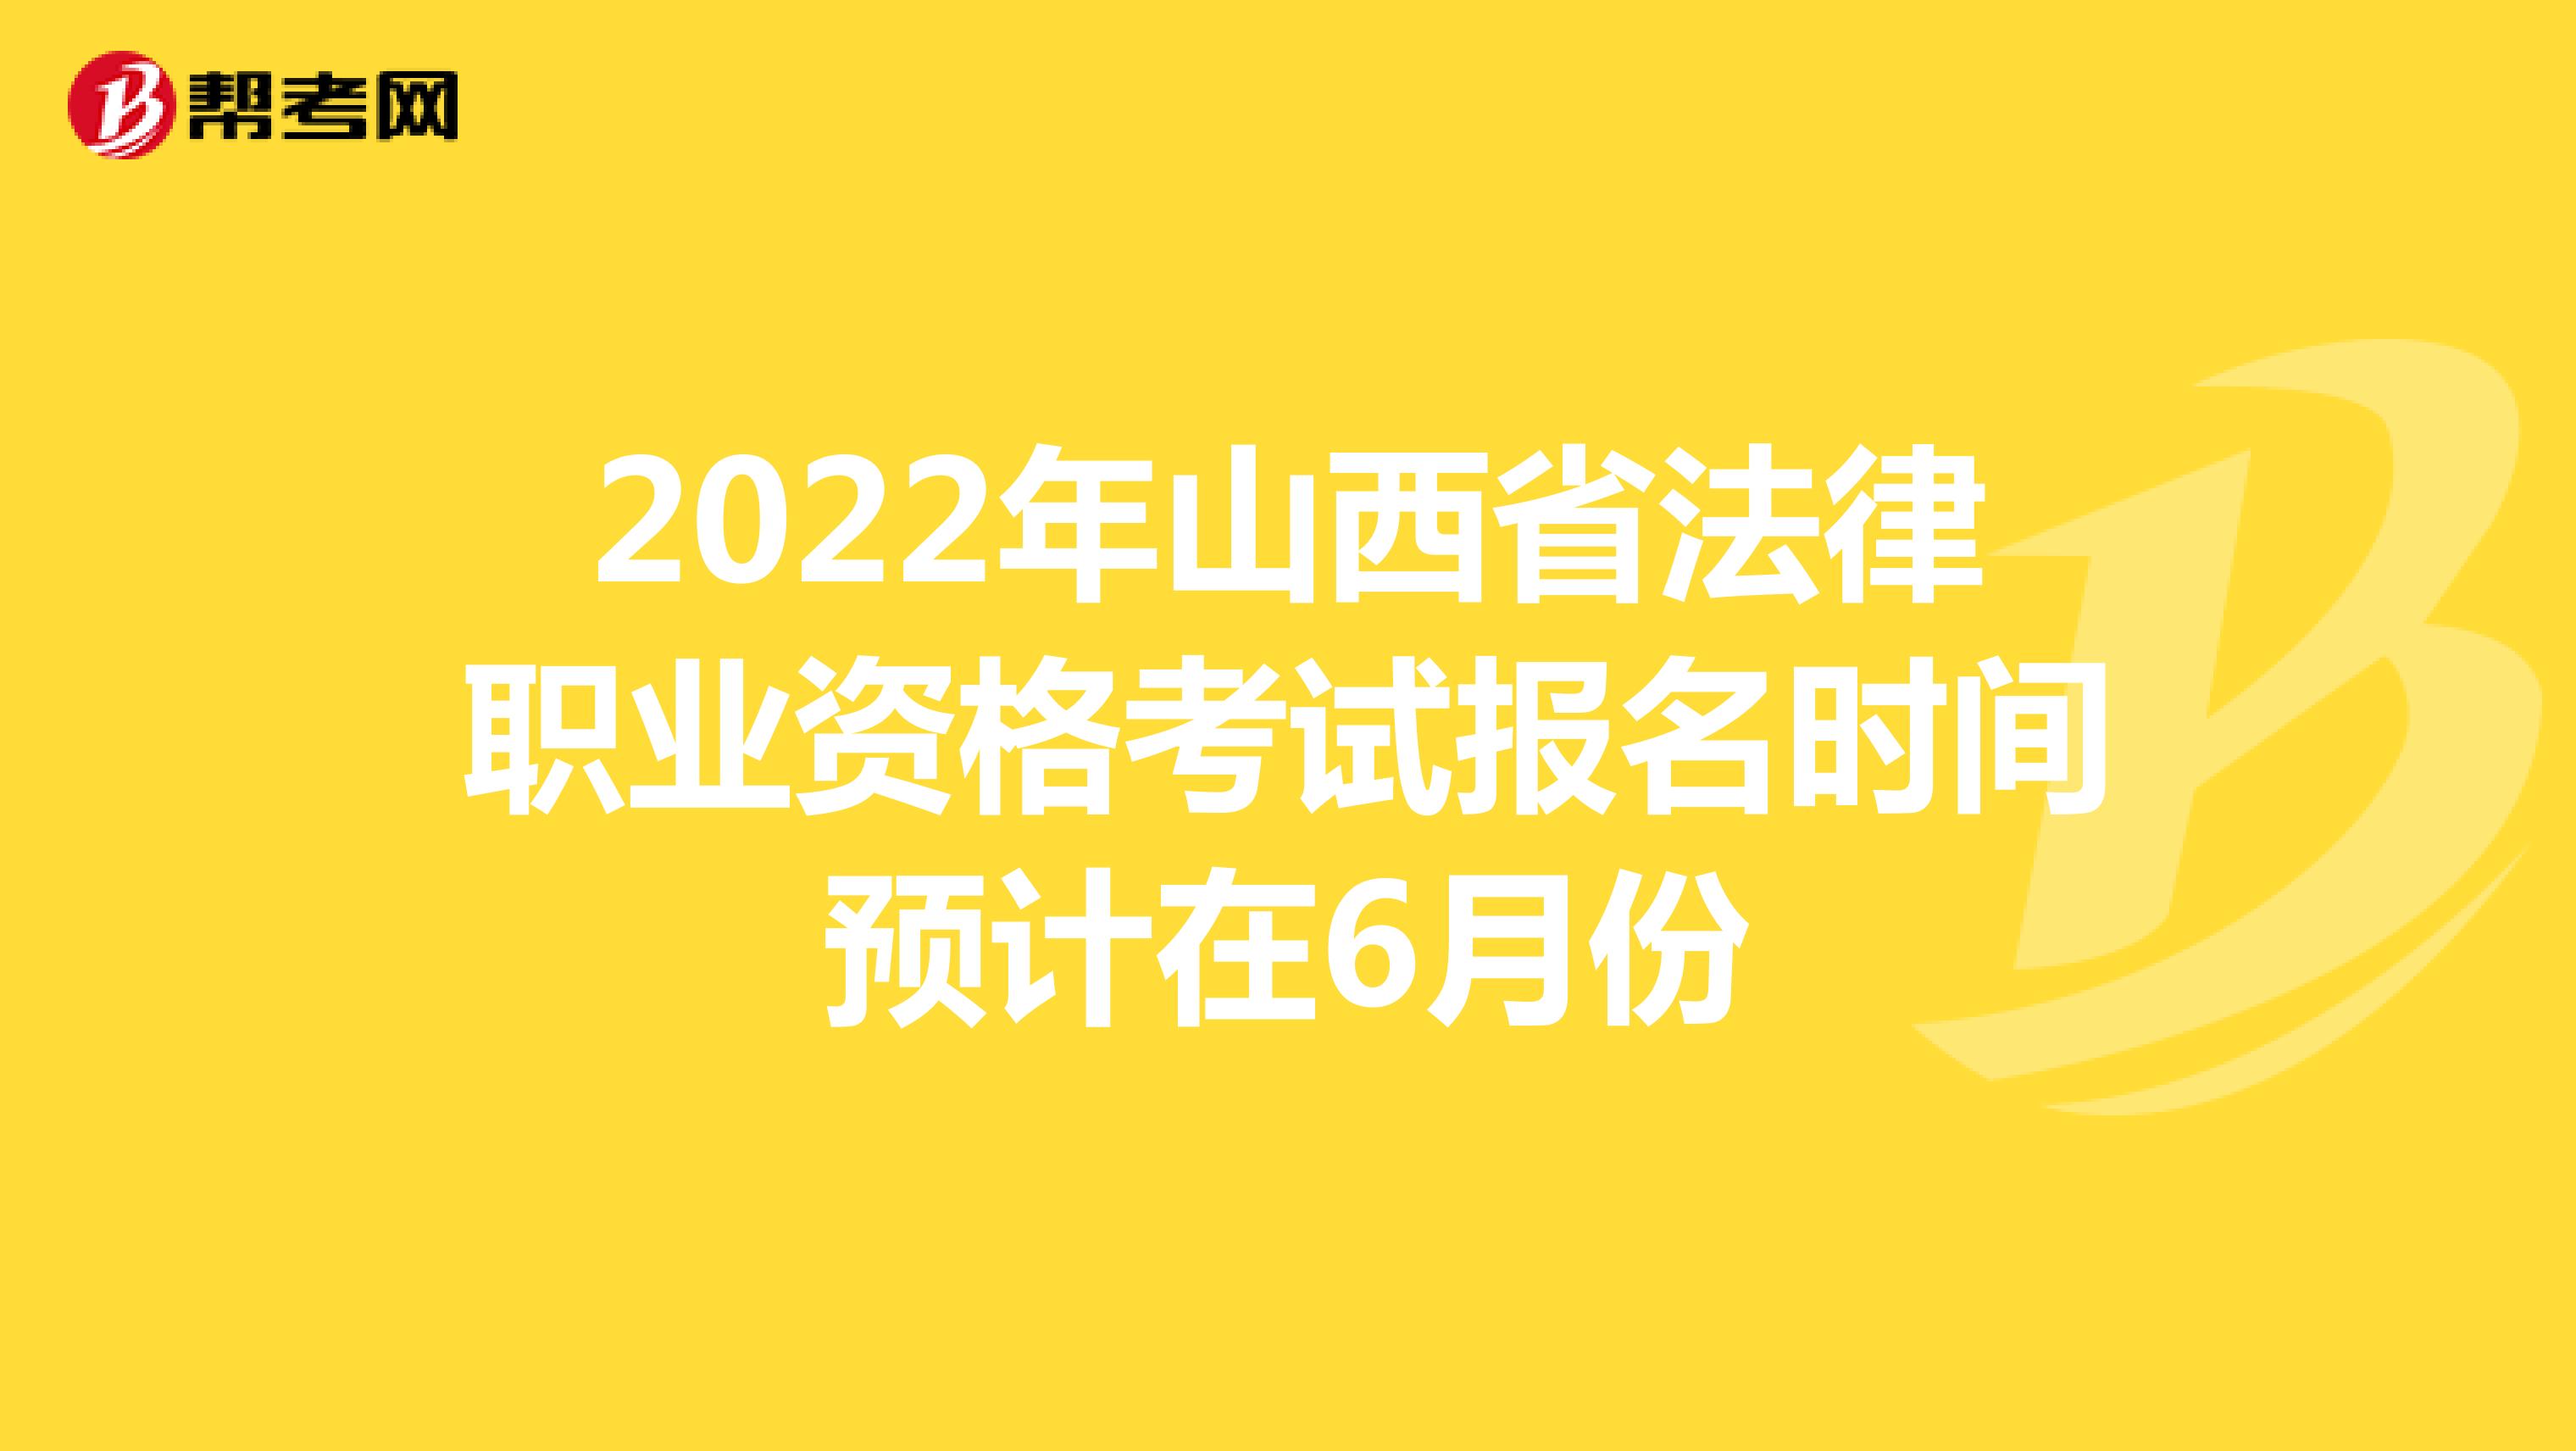 2022年山西省法律职业资格考试报名时间预计在6月份